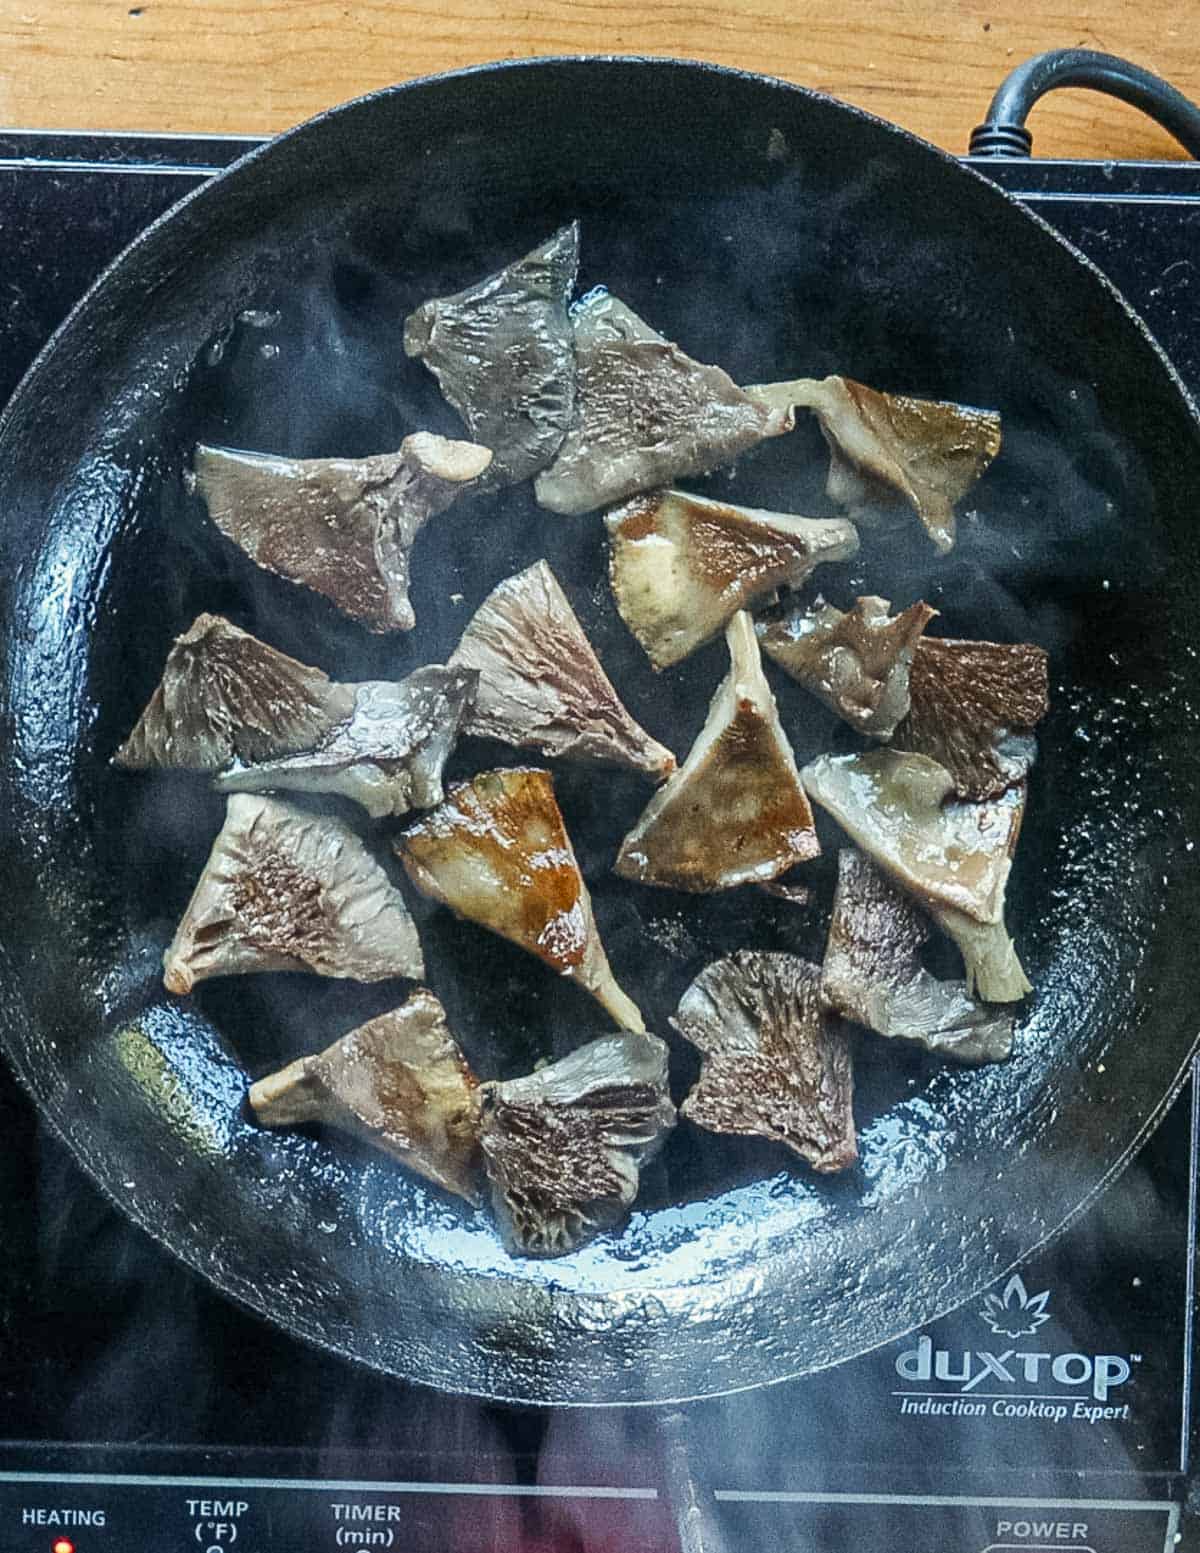 A pan of sauteed, golden brown mushrooms. 